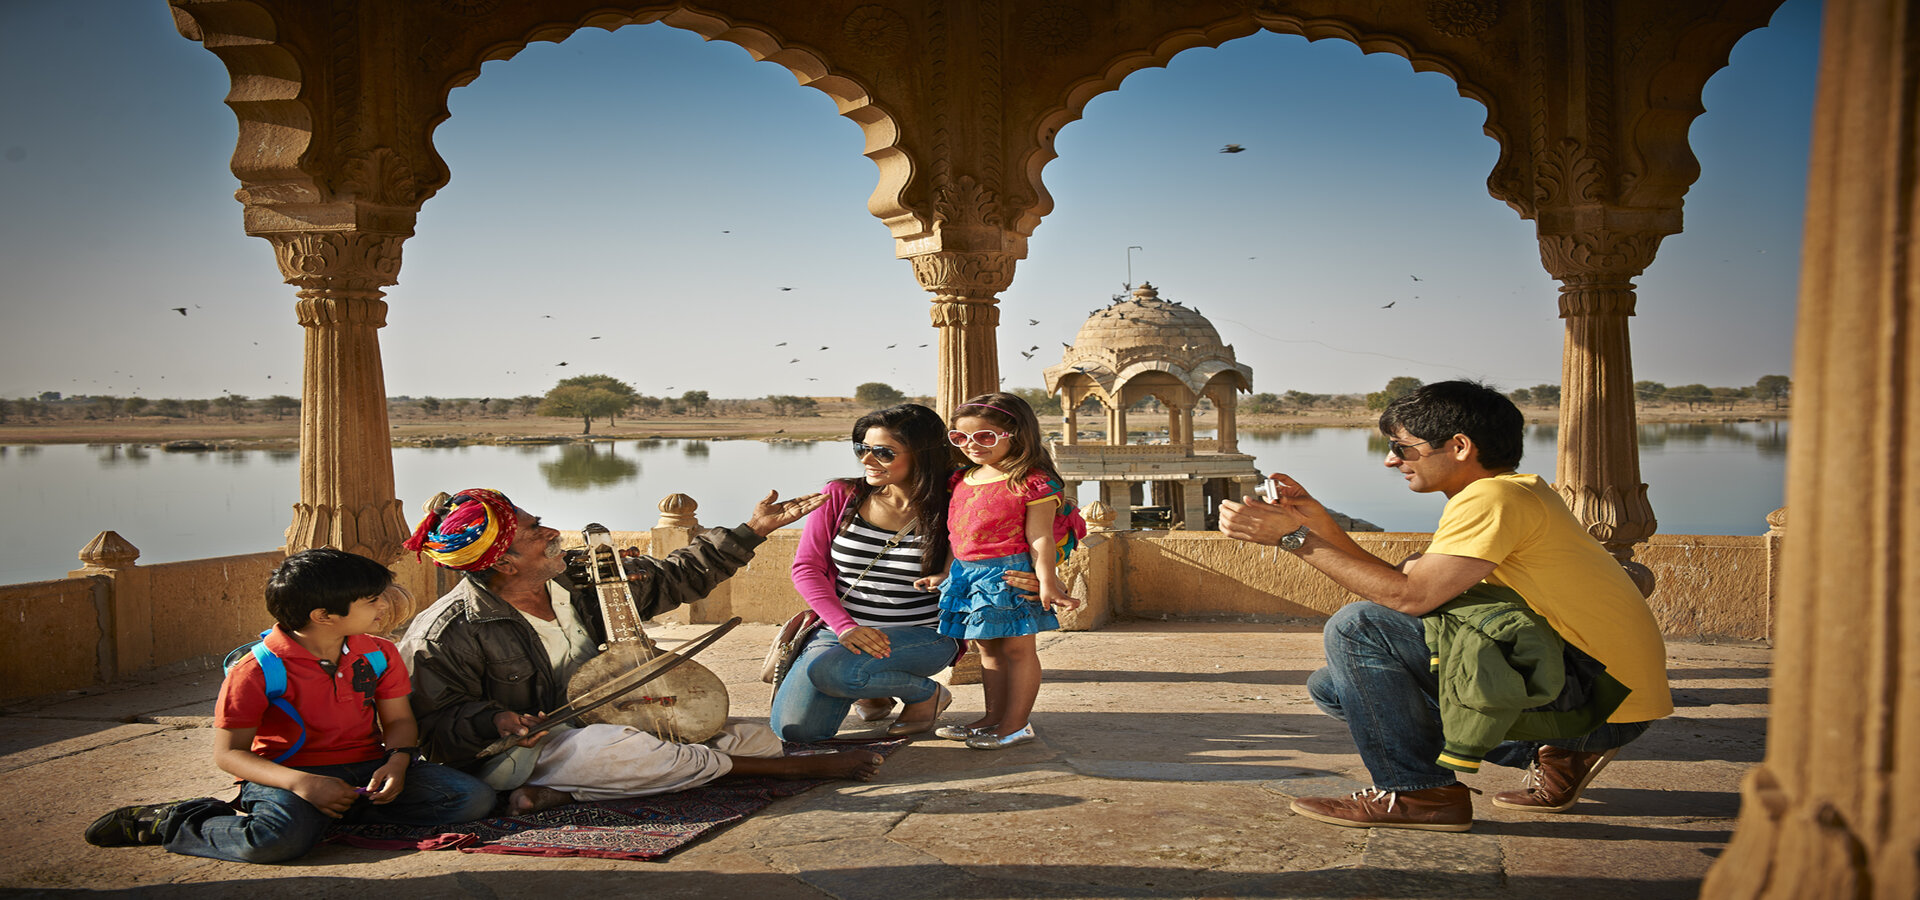 Itinerary for Jaisalmer